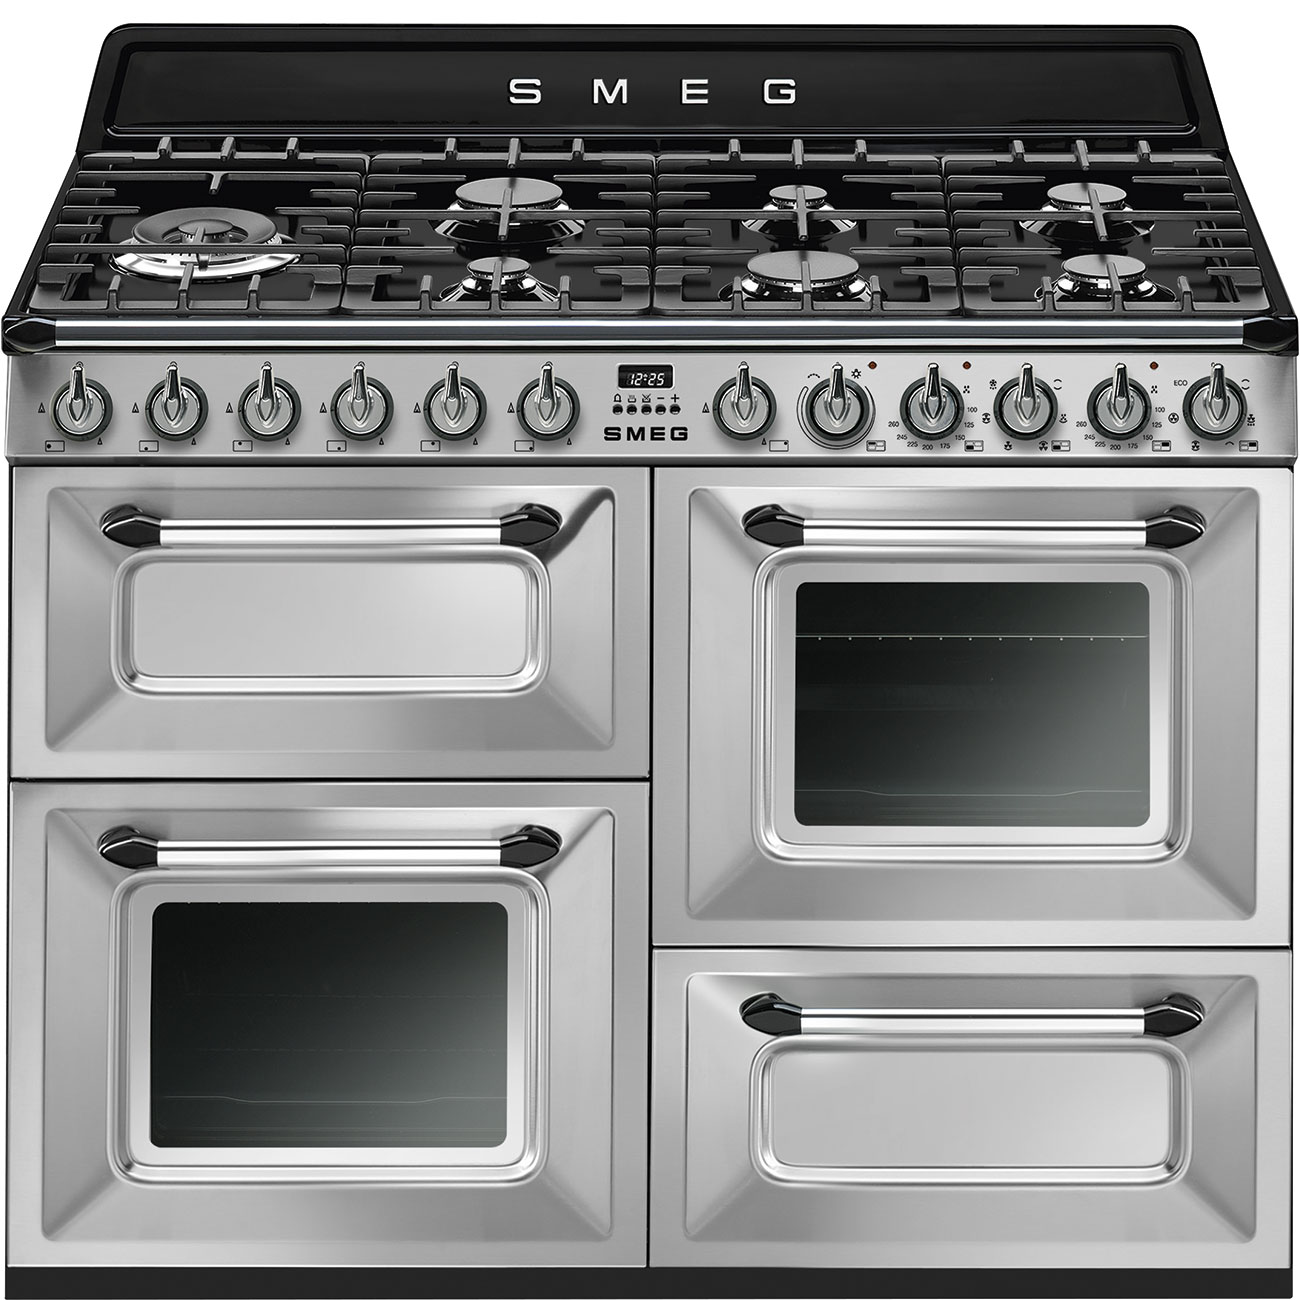 Inzichtelijk inleveren thuis SMEG TR4110X-1 Fornuis 110 x 60 x 90 - 7 branders gas - 2 ovens  multifunctie - energieklasse A + grill-oven - inox - Victoria